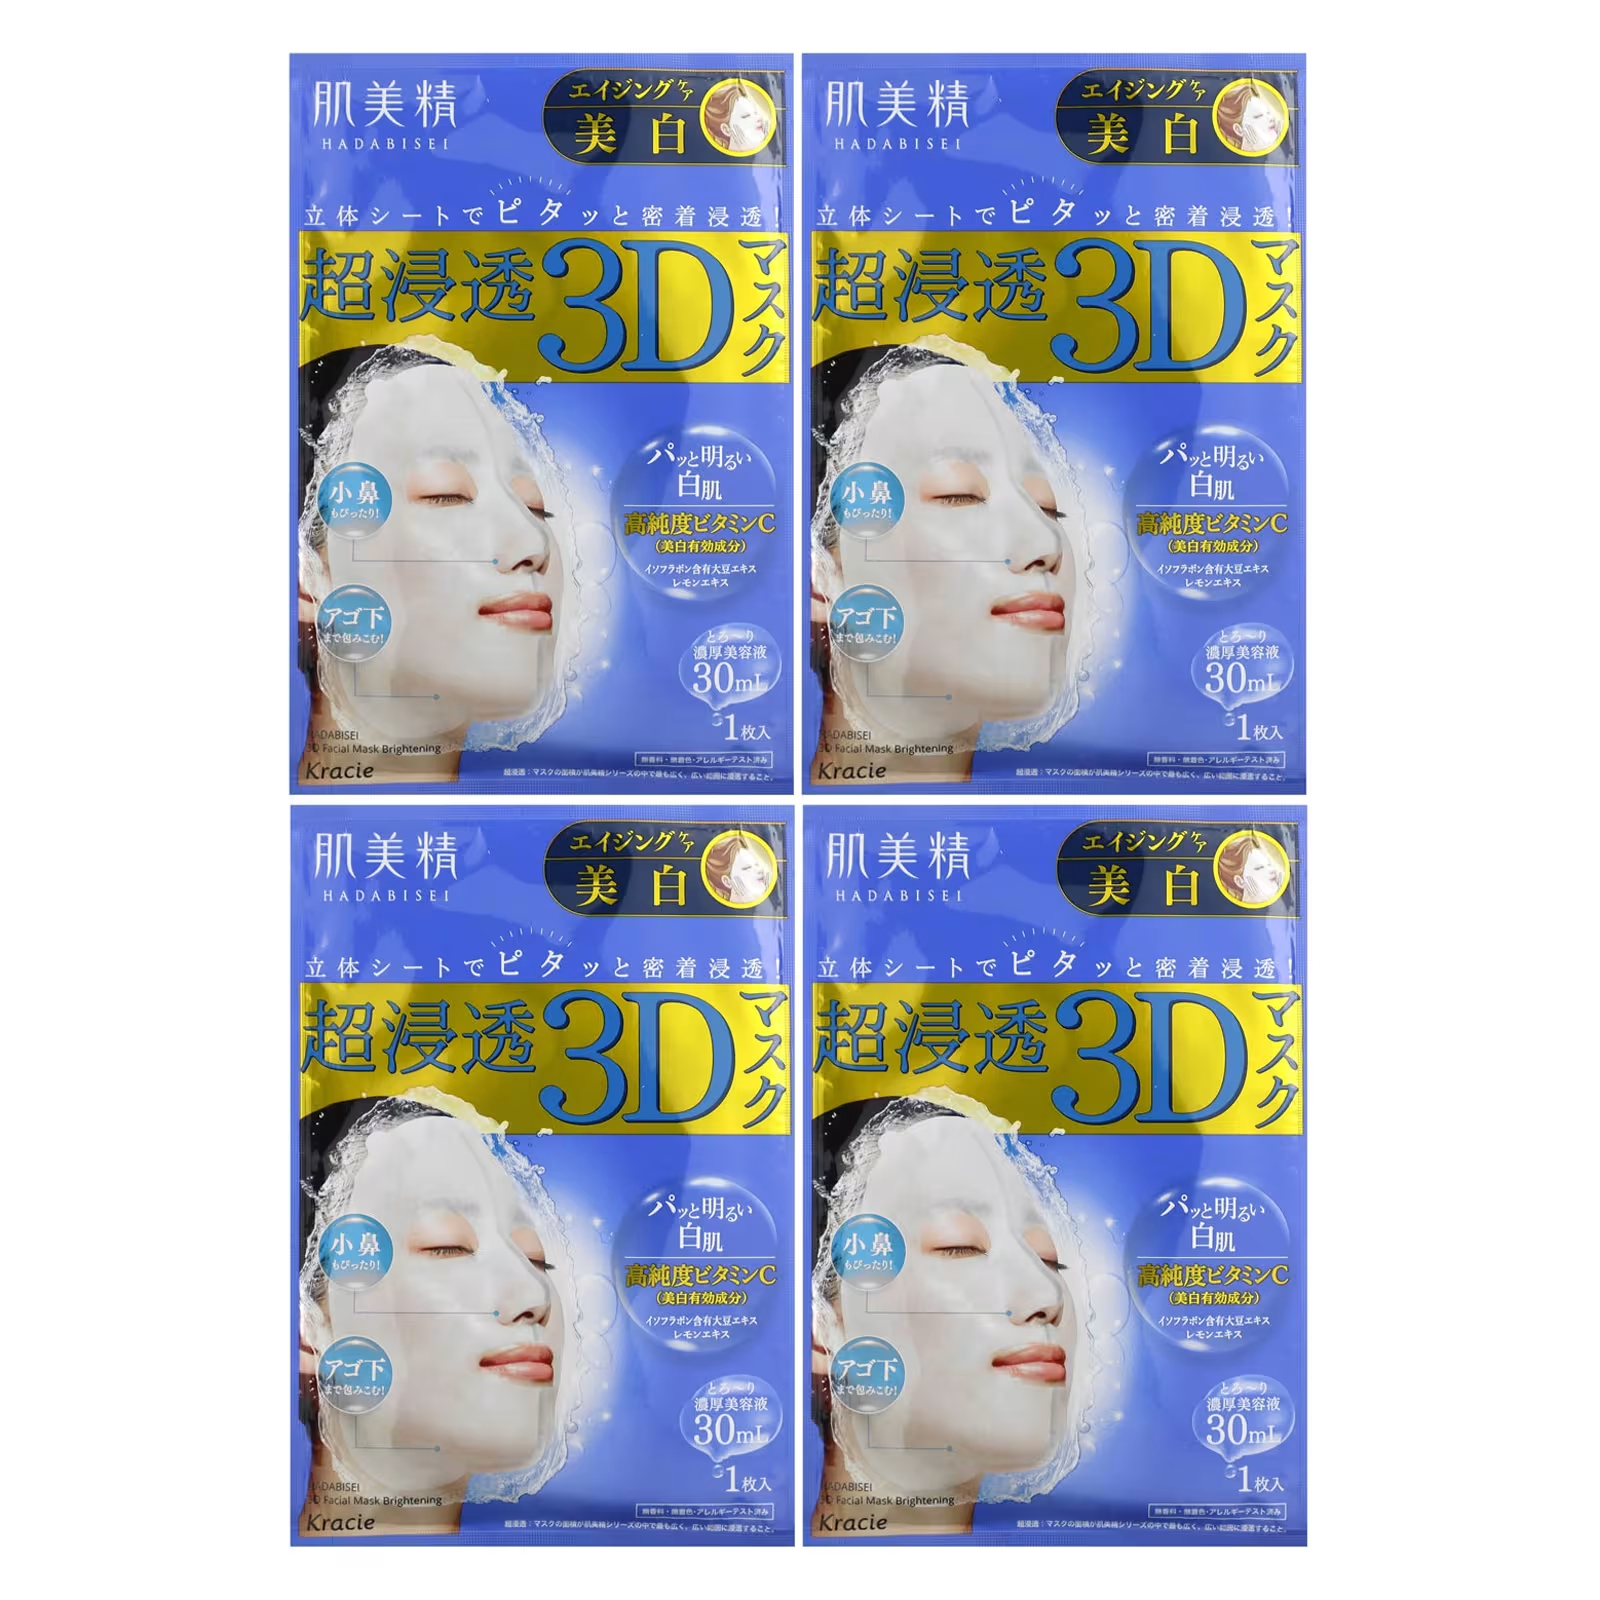 Маска для лица Kracie Hadabisei 3D Beauty уход за старением и очищение, 4 листа мужская маска для лица kast expo обогащенная магнием 25 г